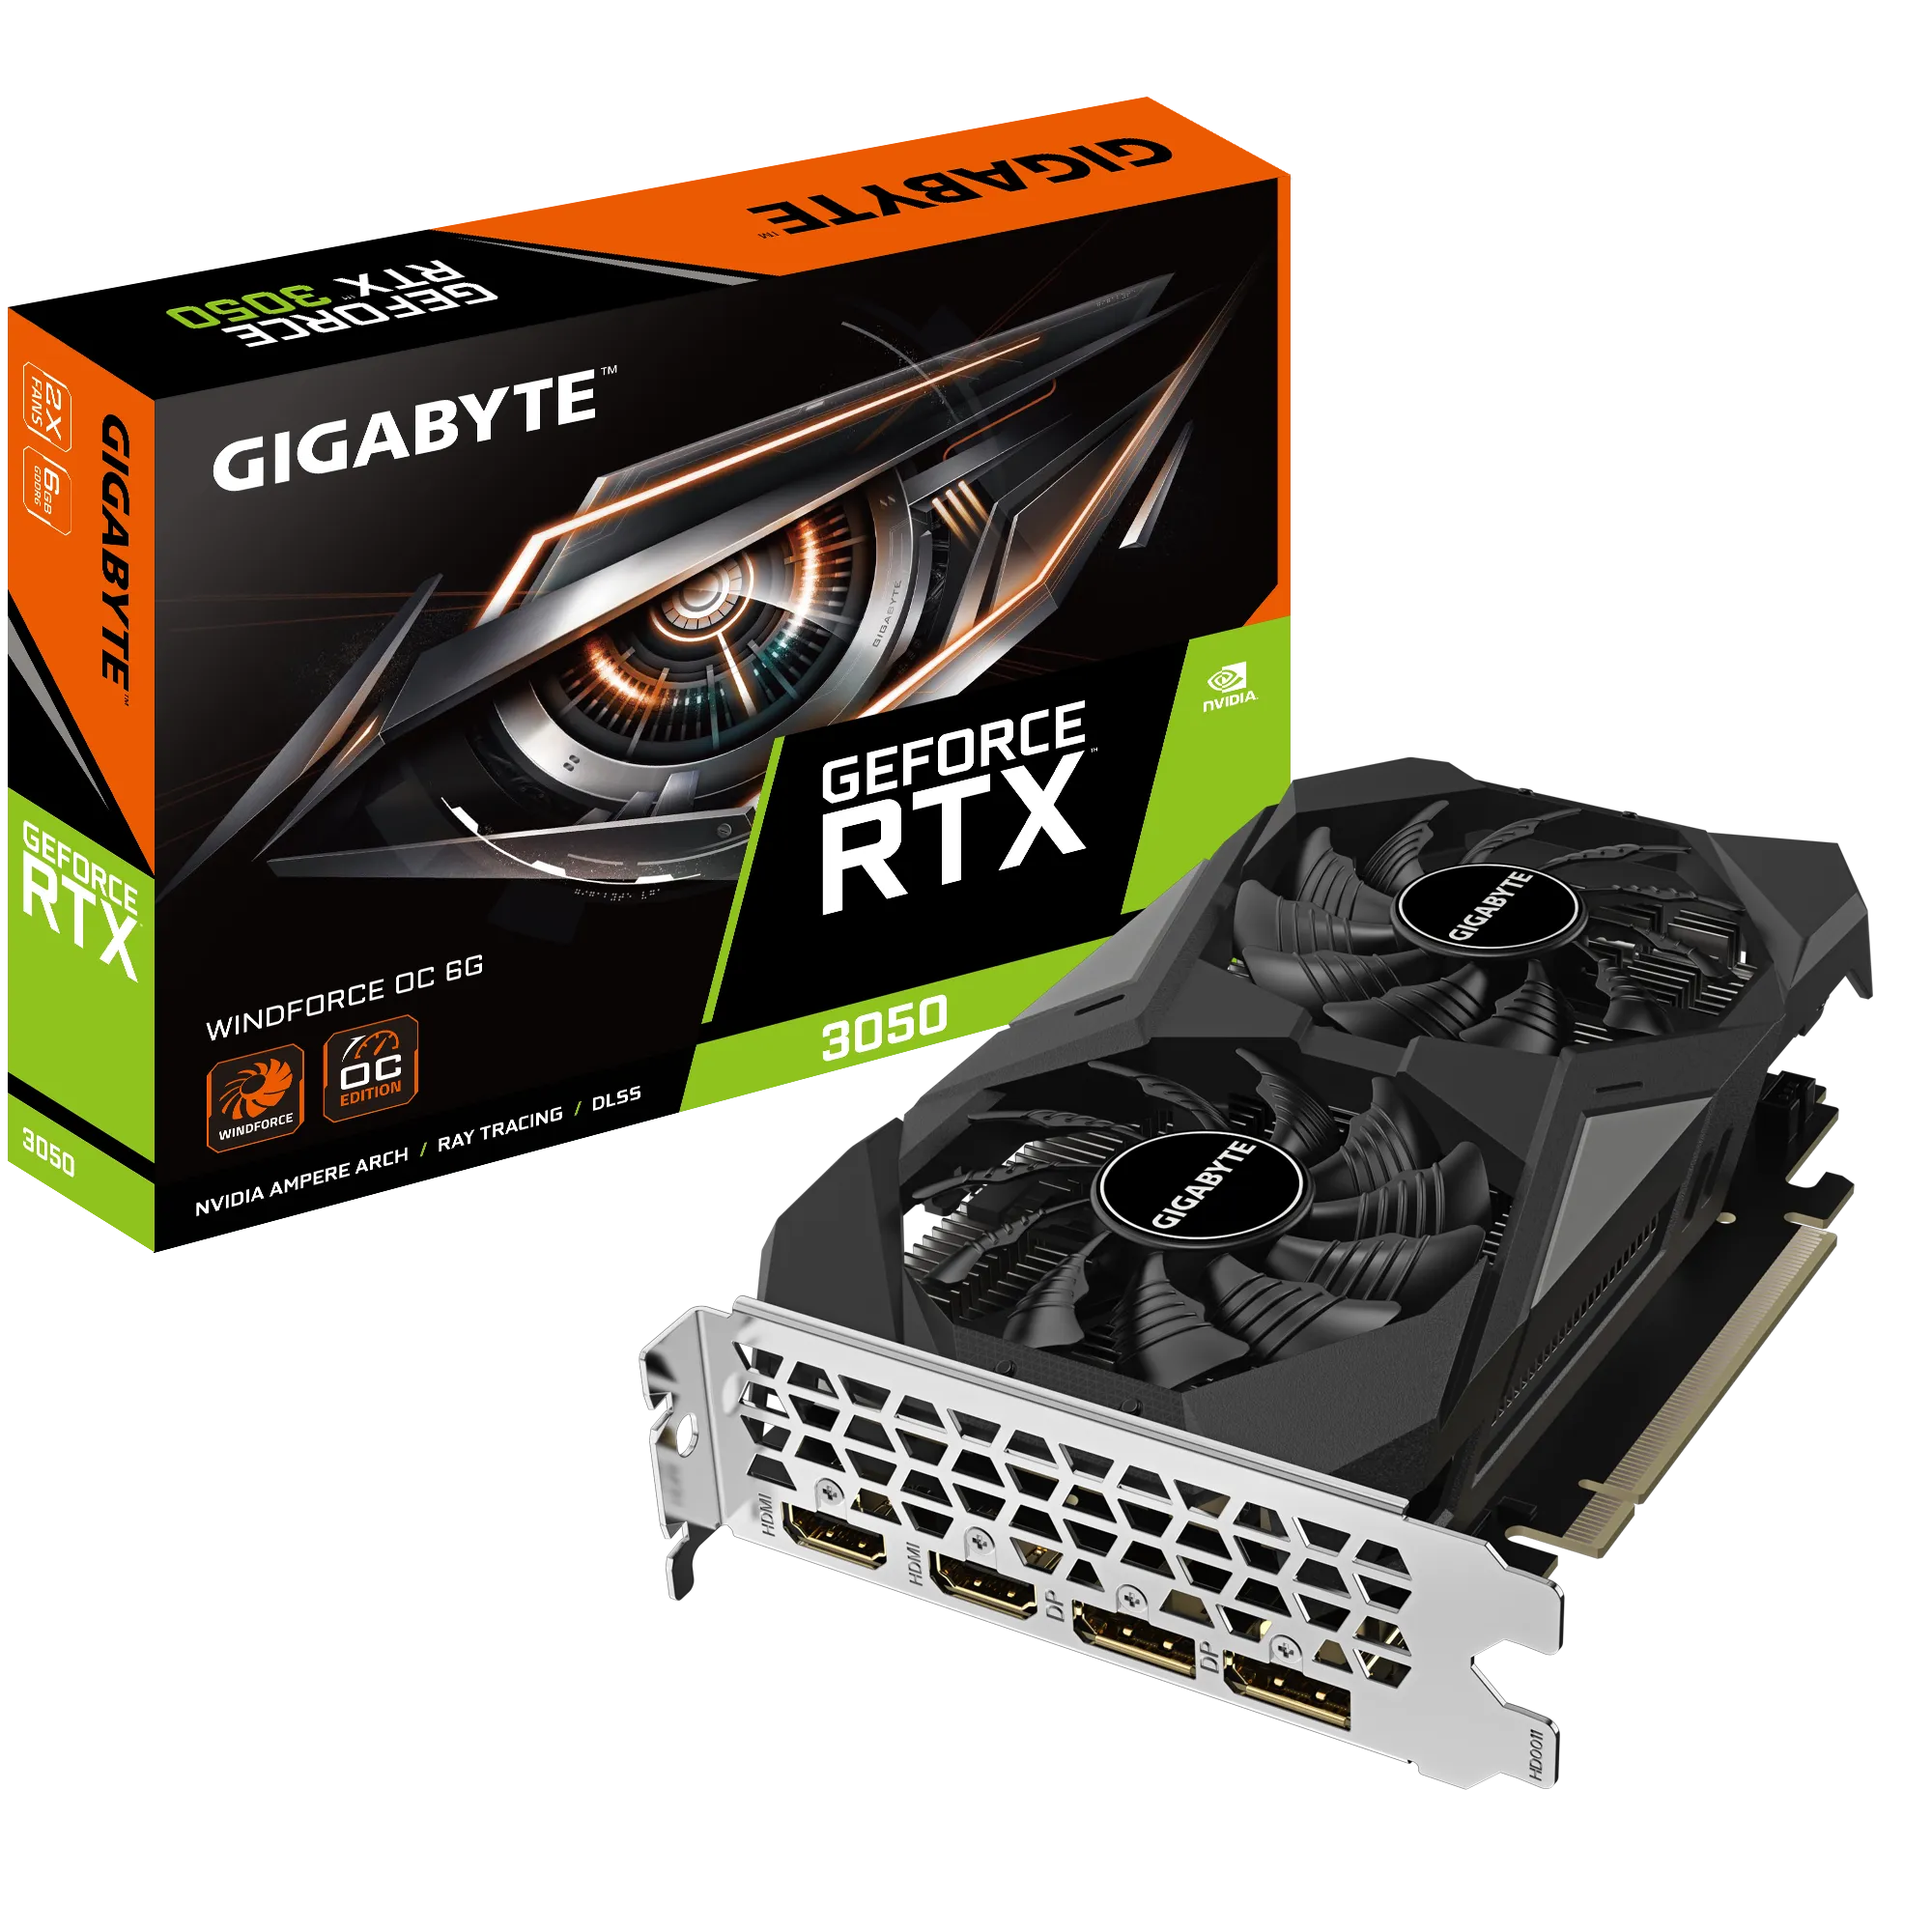 Видеокарта GIGABYTE NVIDIA GeForce RTX 3050 WindForce, 6Gb DDR6, 96 бит, PCI-E, DVI, 2HDMI, 2DP, Retail (GV-N3050WF2OC-6GD)